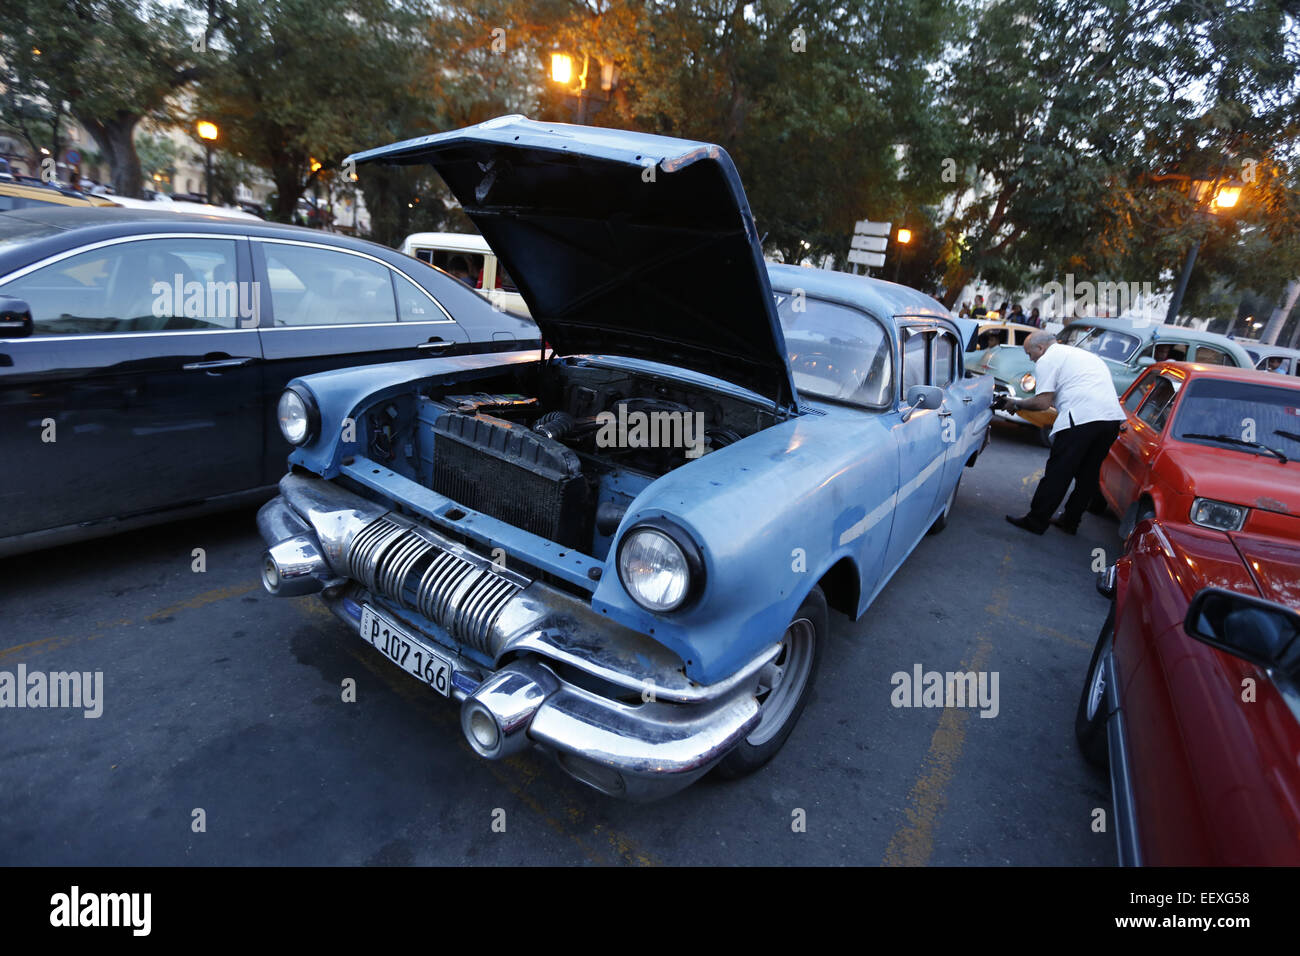 L'Avana, Cuba. Xx Dec, 2014. Un tassista gas il suo vintage americano auto realizzato nella Habana Vieja (l'Avana Vecchia) sezione di Havana, Cuba. © Angelo Chevrestt/ZUMA filo/Alamy Live News Foto Stock